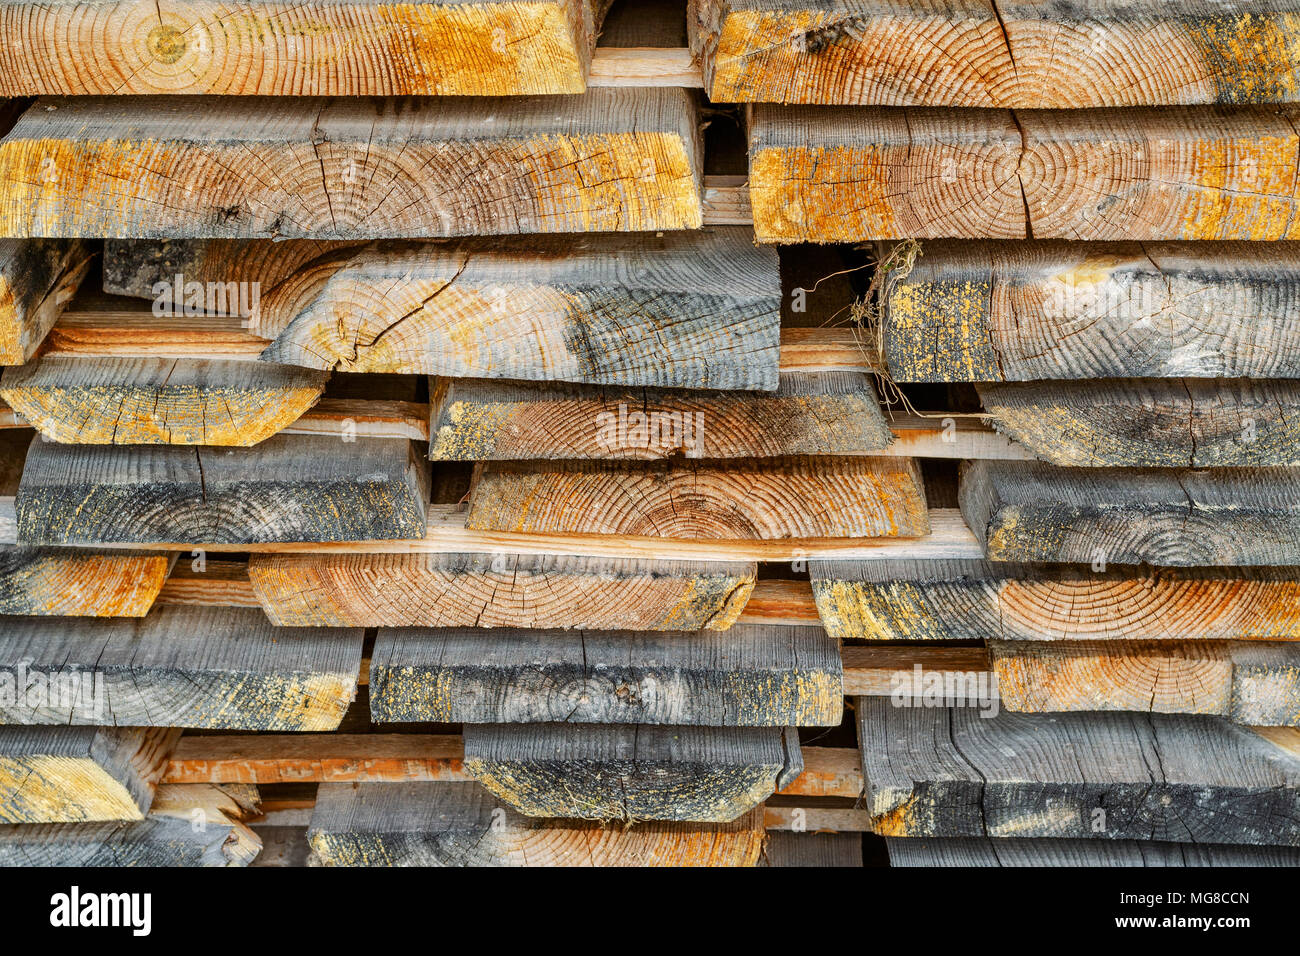 Stapel gestapelt Bauholz. Getrocknete Holz Bretter mit einem Knacken. Verschiedene Arten von Holz. Close-up. Stockfoto